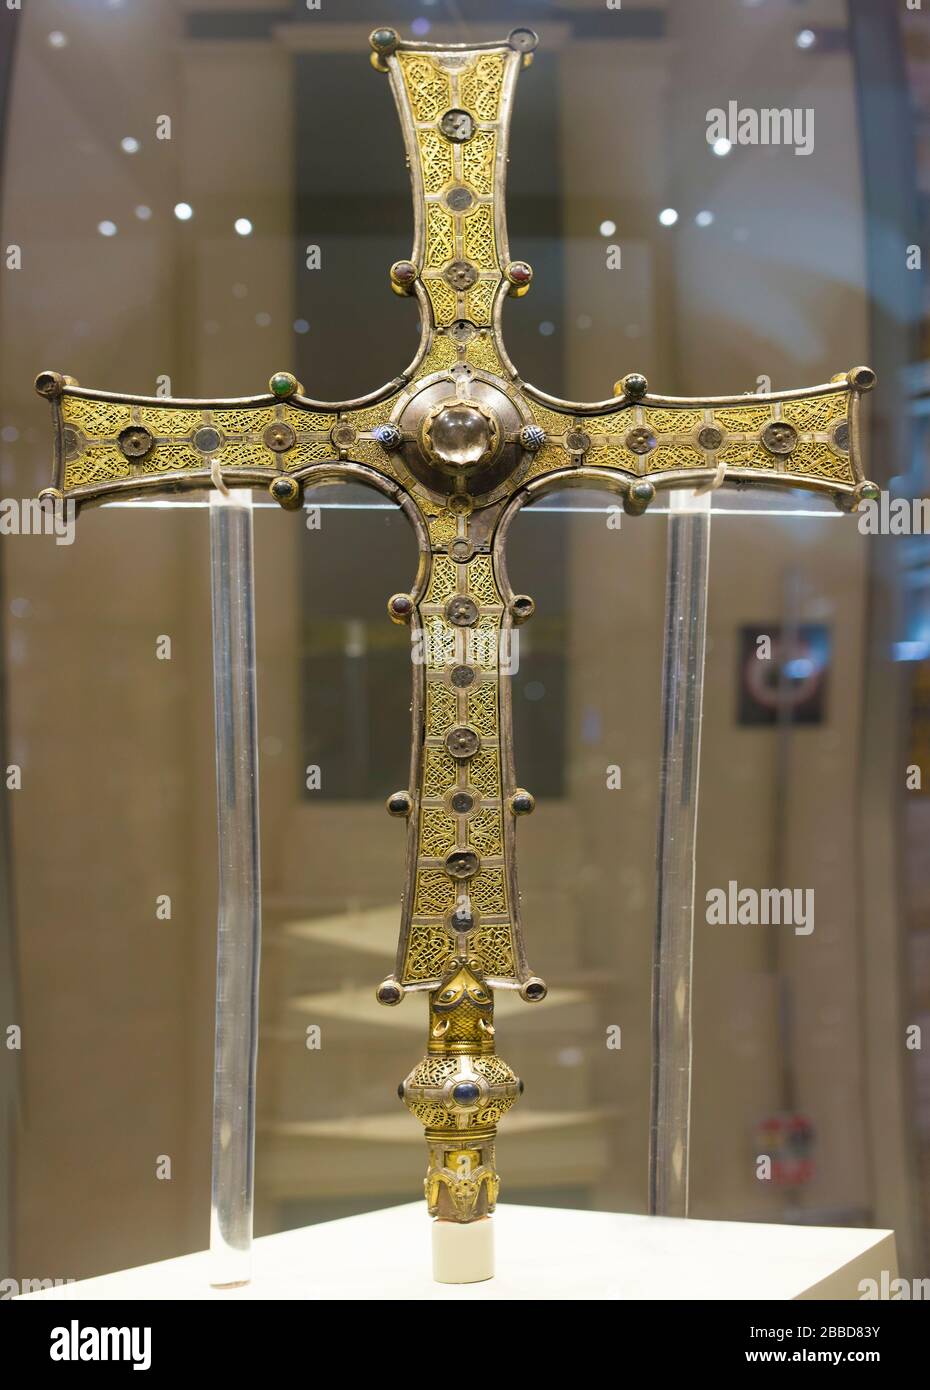 Dublin, Irlande - 20 février 2020: Croix de Cong, 12ème siècle. La croix processionnelle de l'irlandais chrétien ornamened a été mise à l'écart. Musée national d'Irlande Banque D'Images